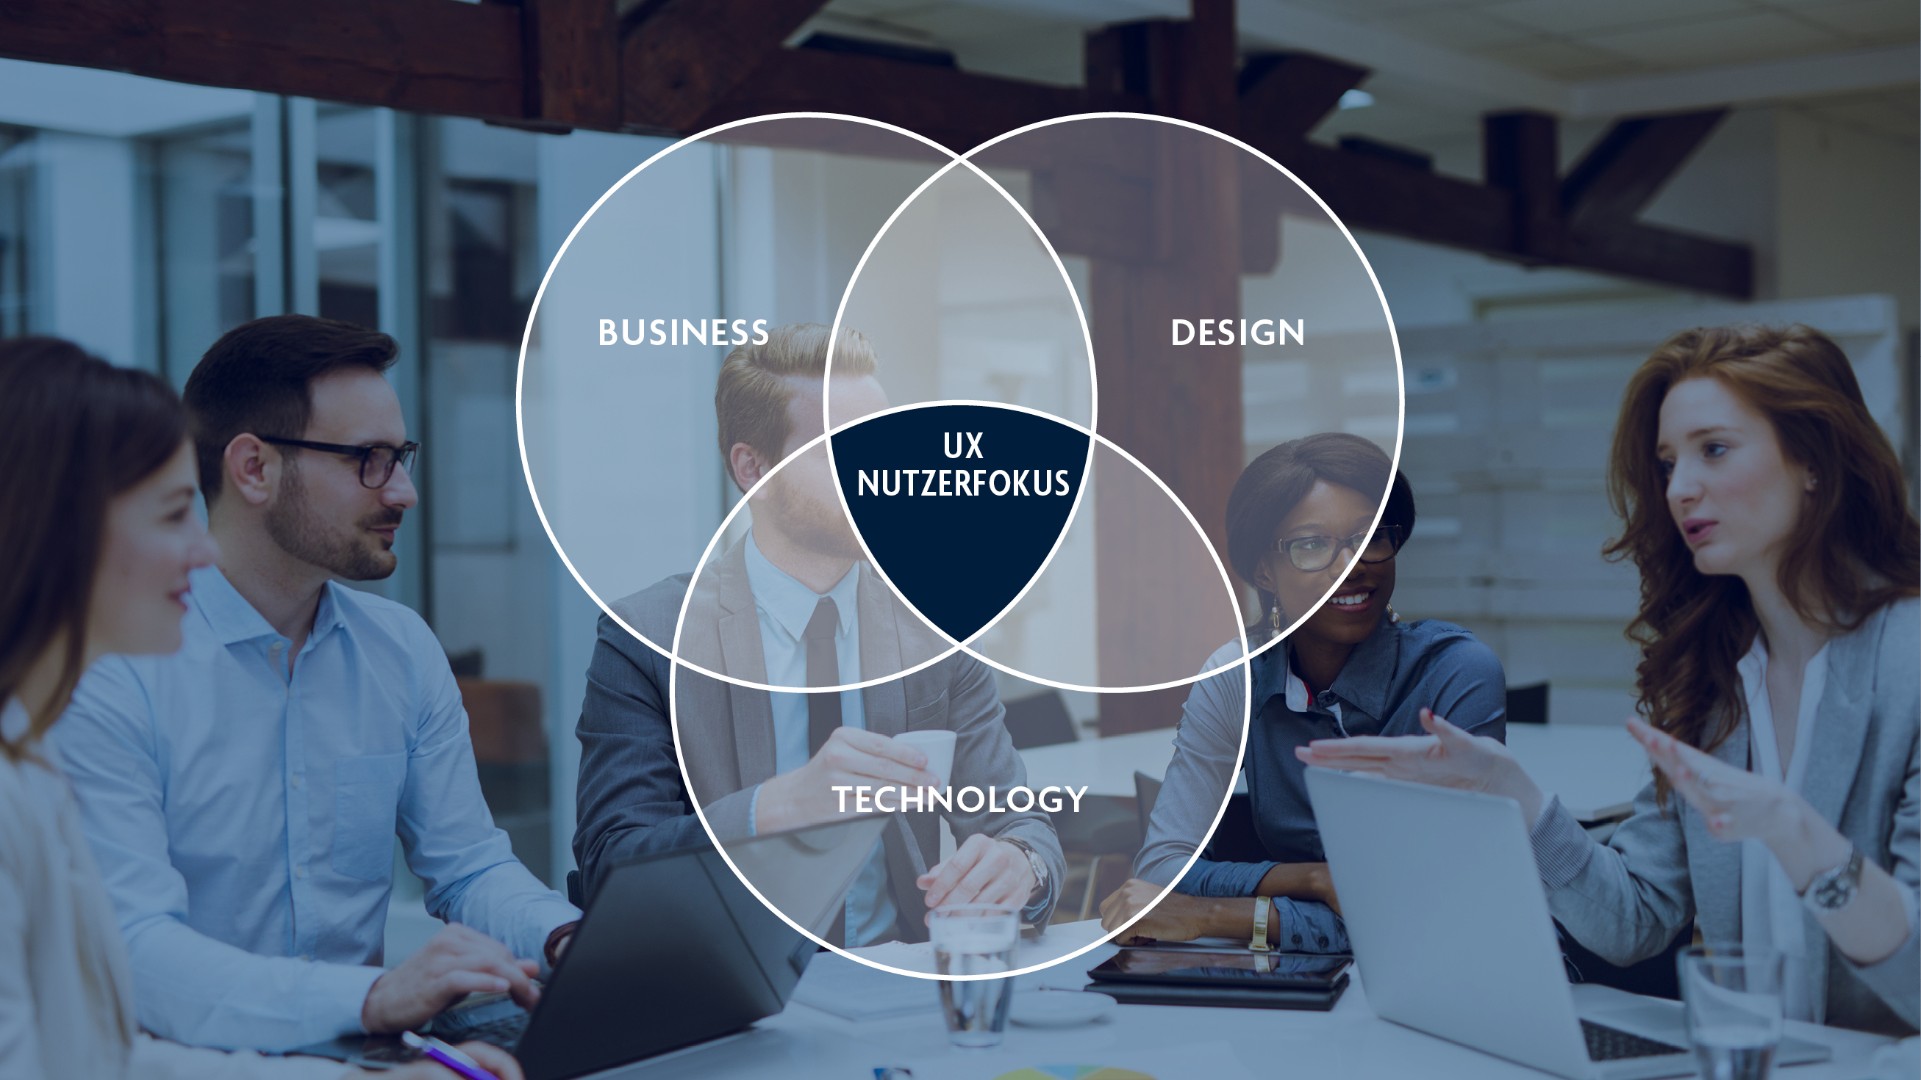 Business + Technology + Design